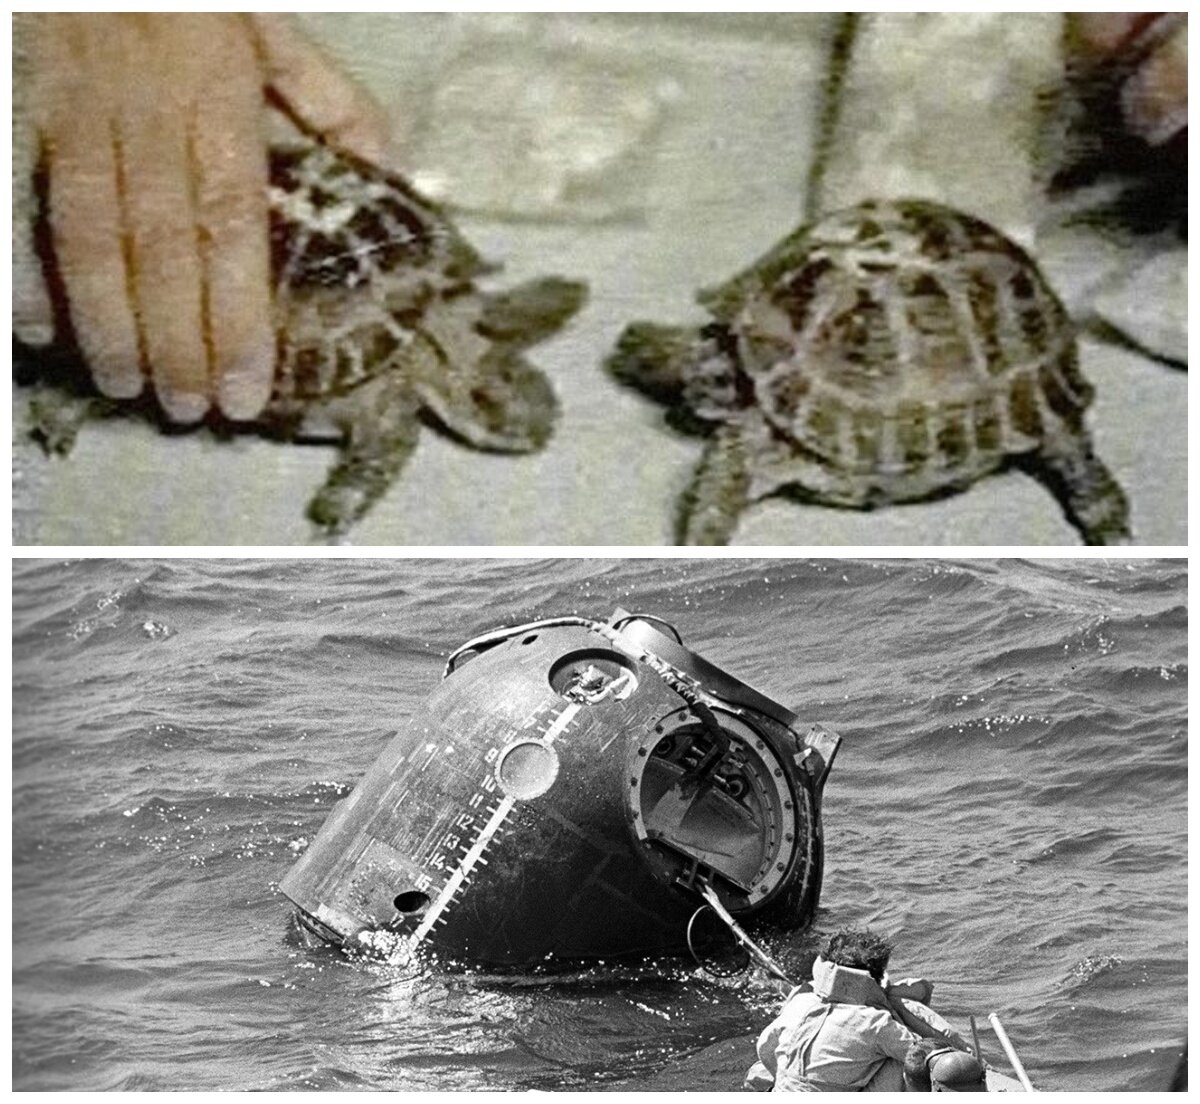 Какое животное первым облетело вокруг луны. Зонд 5 черепахи в космосе. Первыми облетели вокруг Луны черепахи. Среднеазиатские черепахи в космосе. Черепахи облетевшие луну.